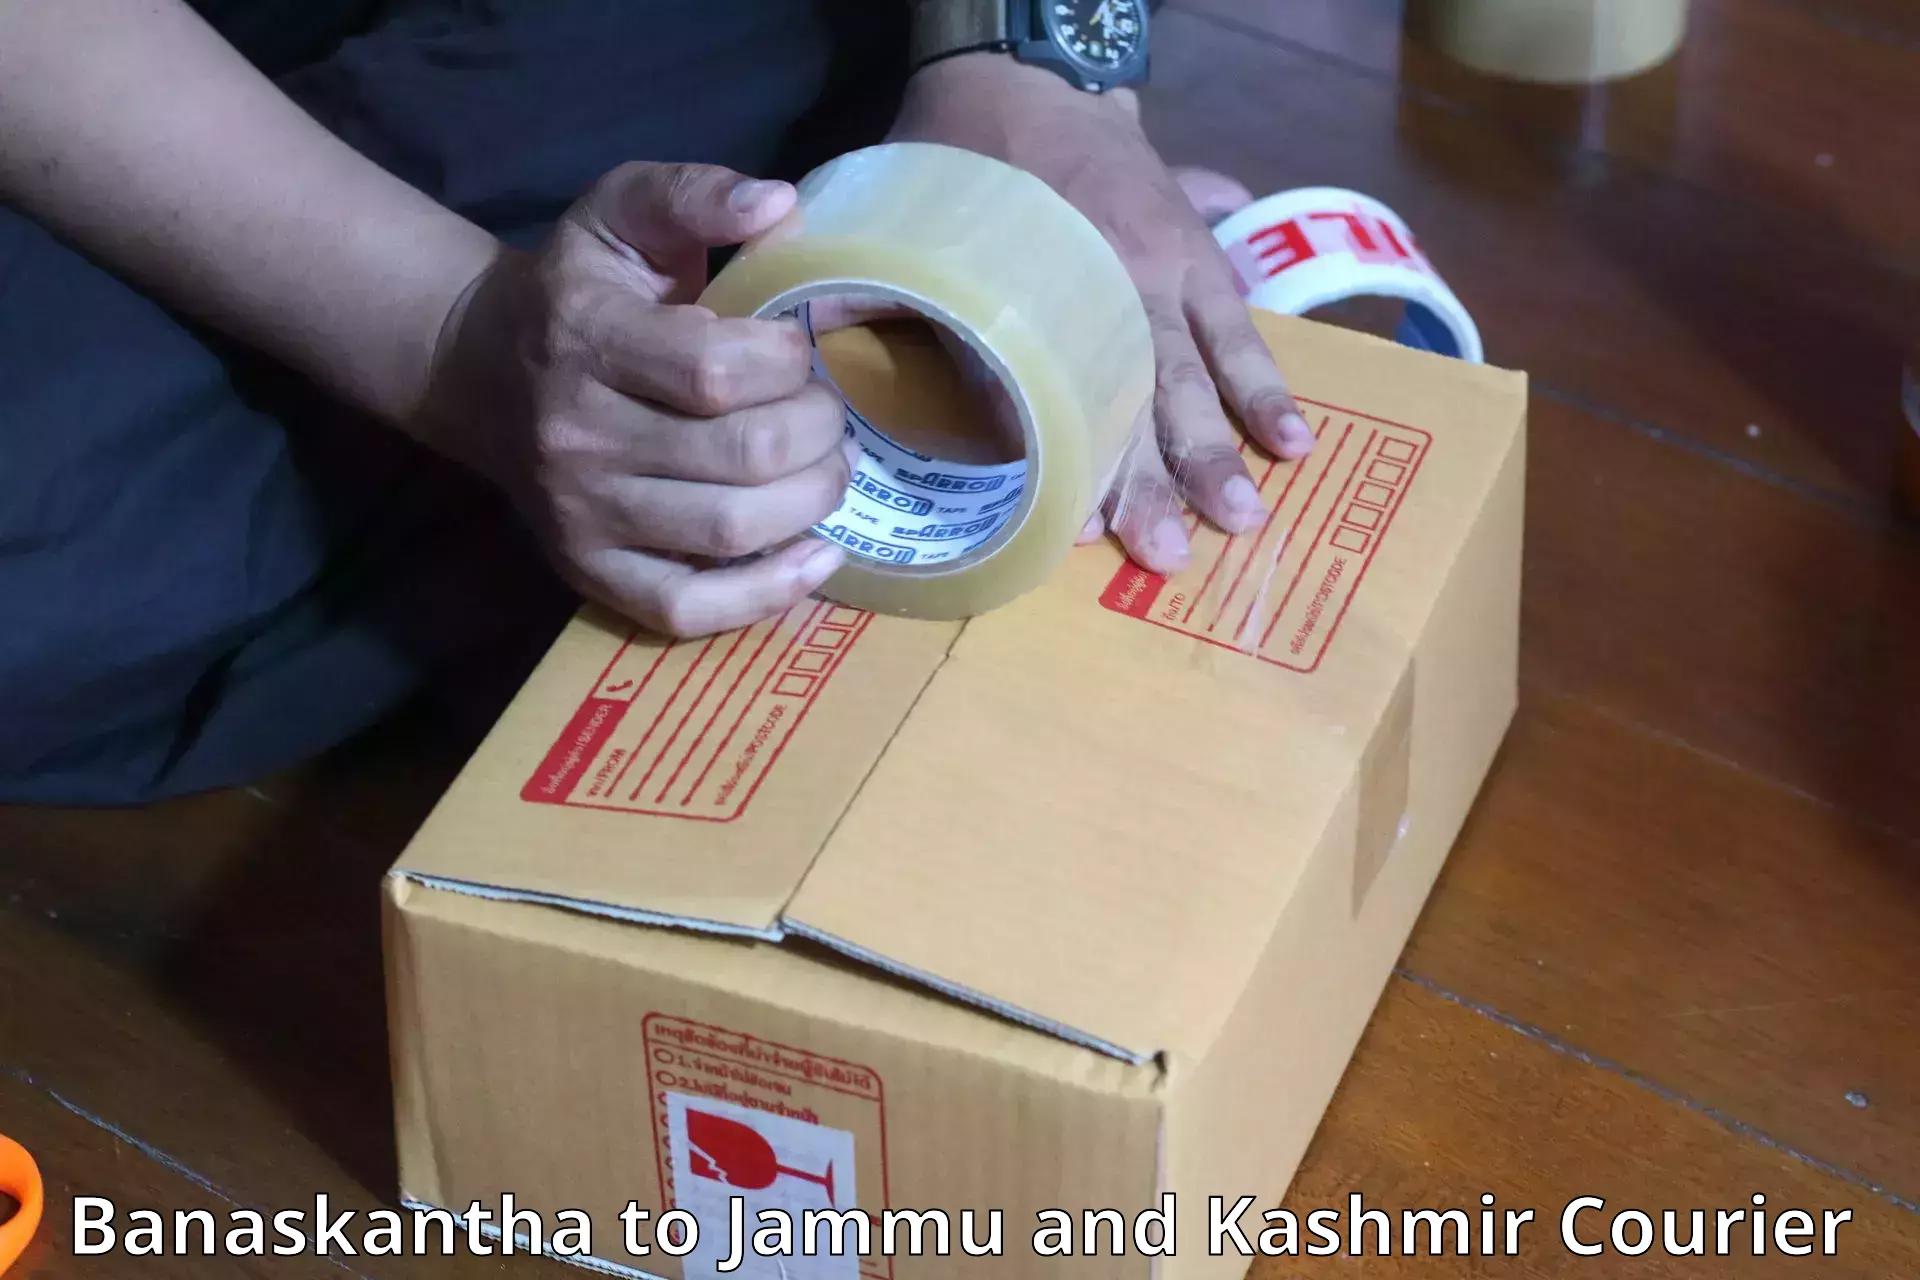 Luggage shipping planner Banaskantha to Jammu and Kashmir